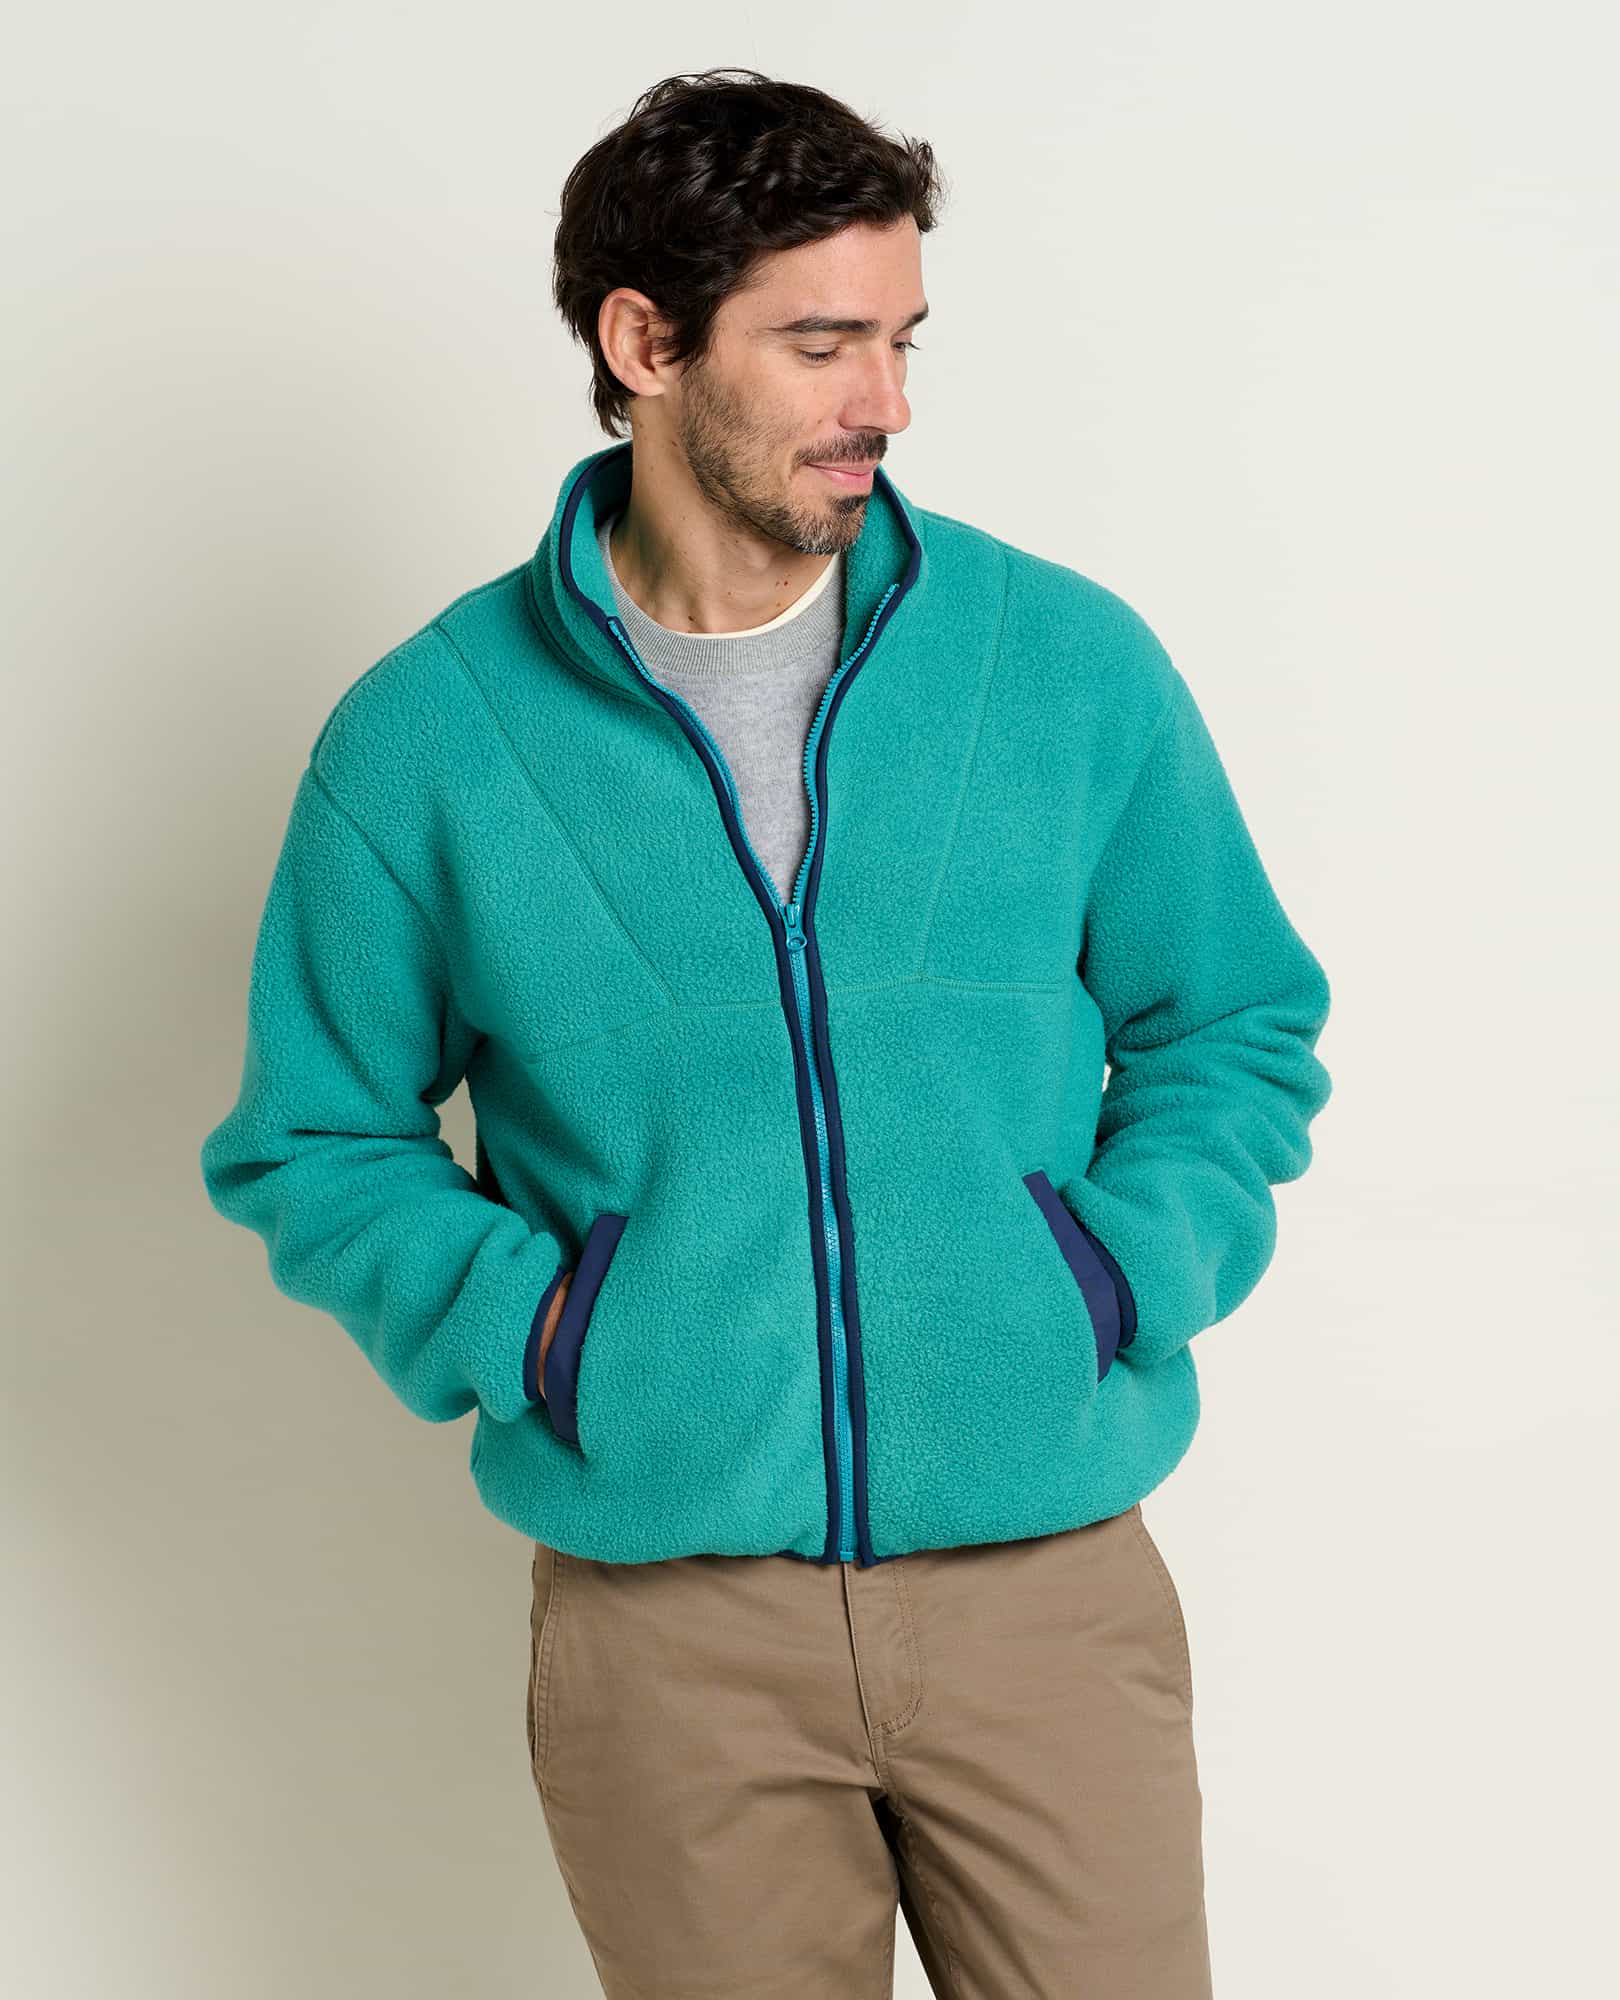 North End Generate Textured Fleece Jacket - Men's